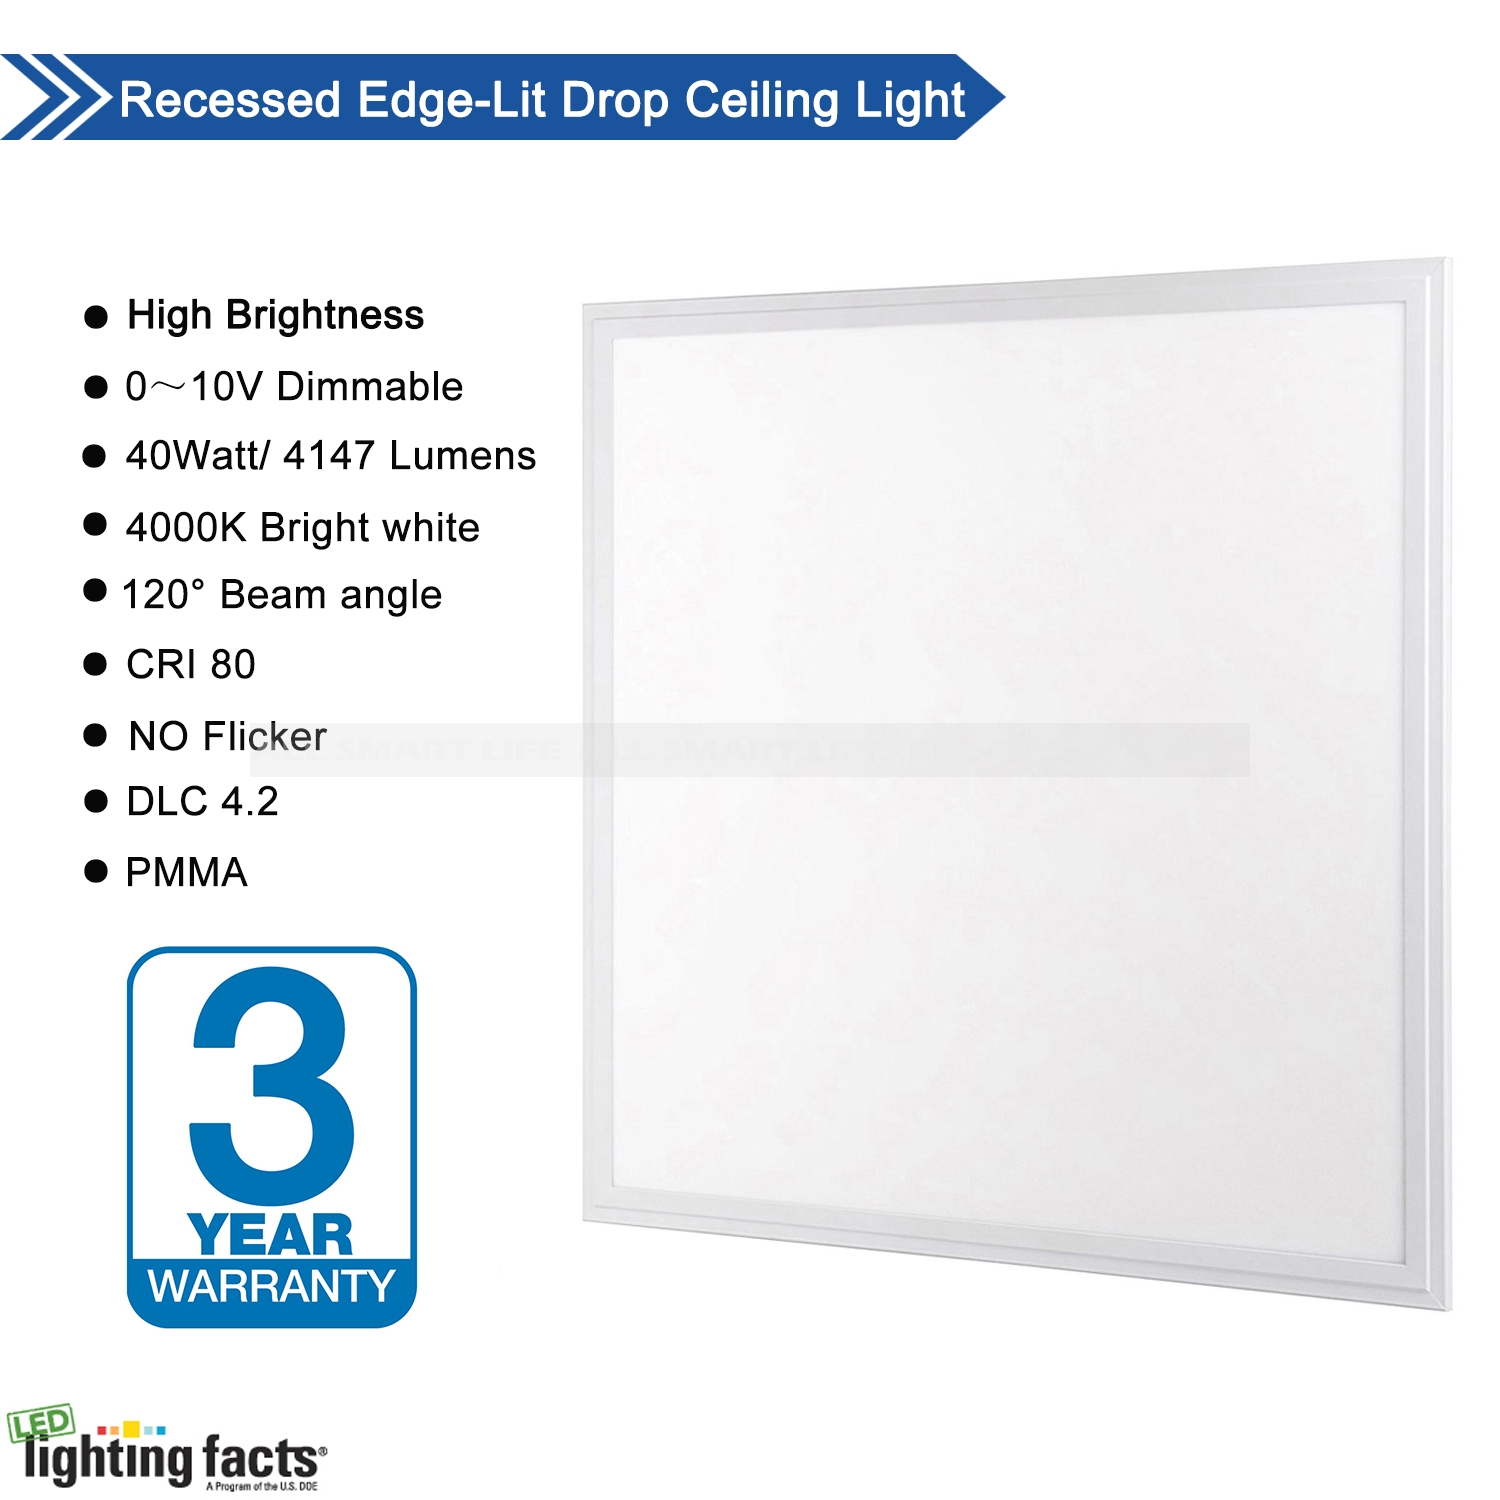 2x2 LED Flat Panel Ceiling Light 0-10V Dimmable Drop Ceiling Lights Back-Lit 2x2FT LED Flat Panel Lighting Allsmartlife 4000K-5000K-6000K 40W/4958 Lumens 100-277V 50/60Hz ETL & FCC 4-Pack